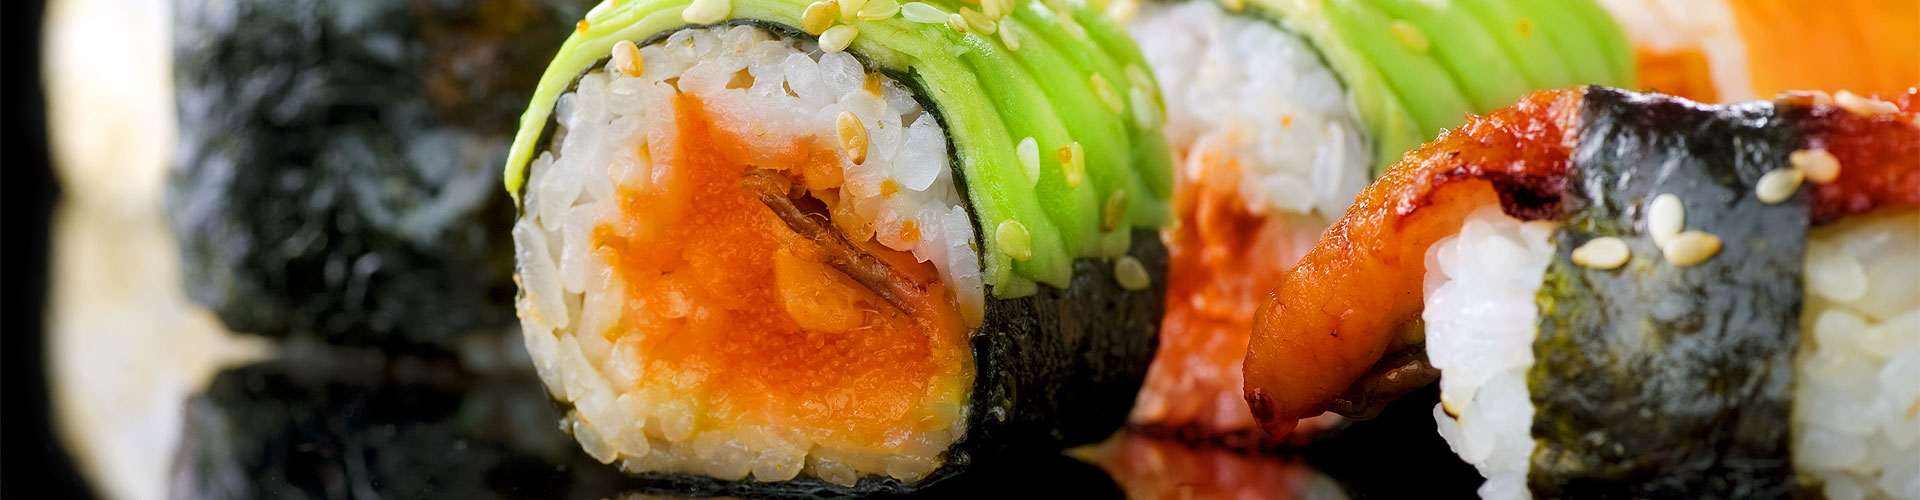 ¿Dónde comer sushi en Talavera?